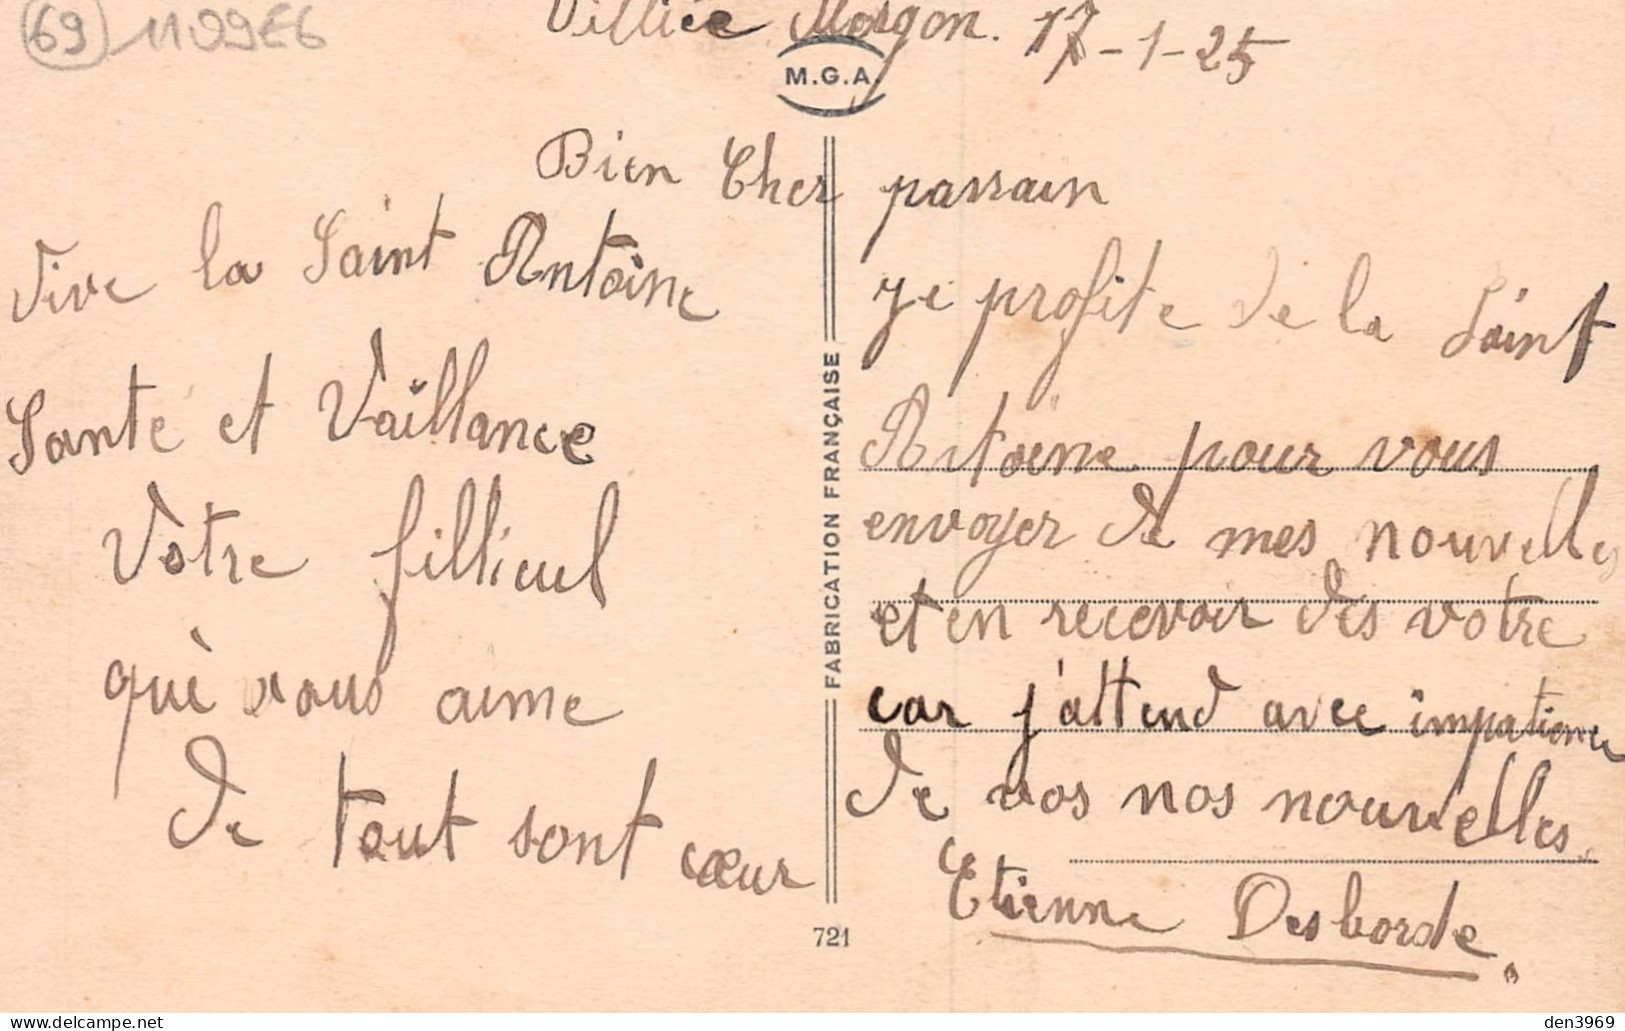 Souvenir De VILLIE-MORGON (Rhône) - Ecrit 1925 (2 Scans) Etienne Desborde - Villie Morgon